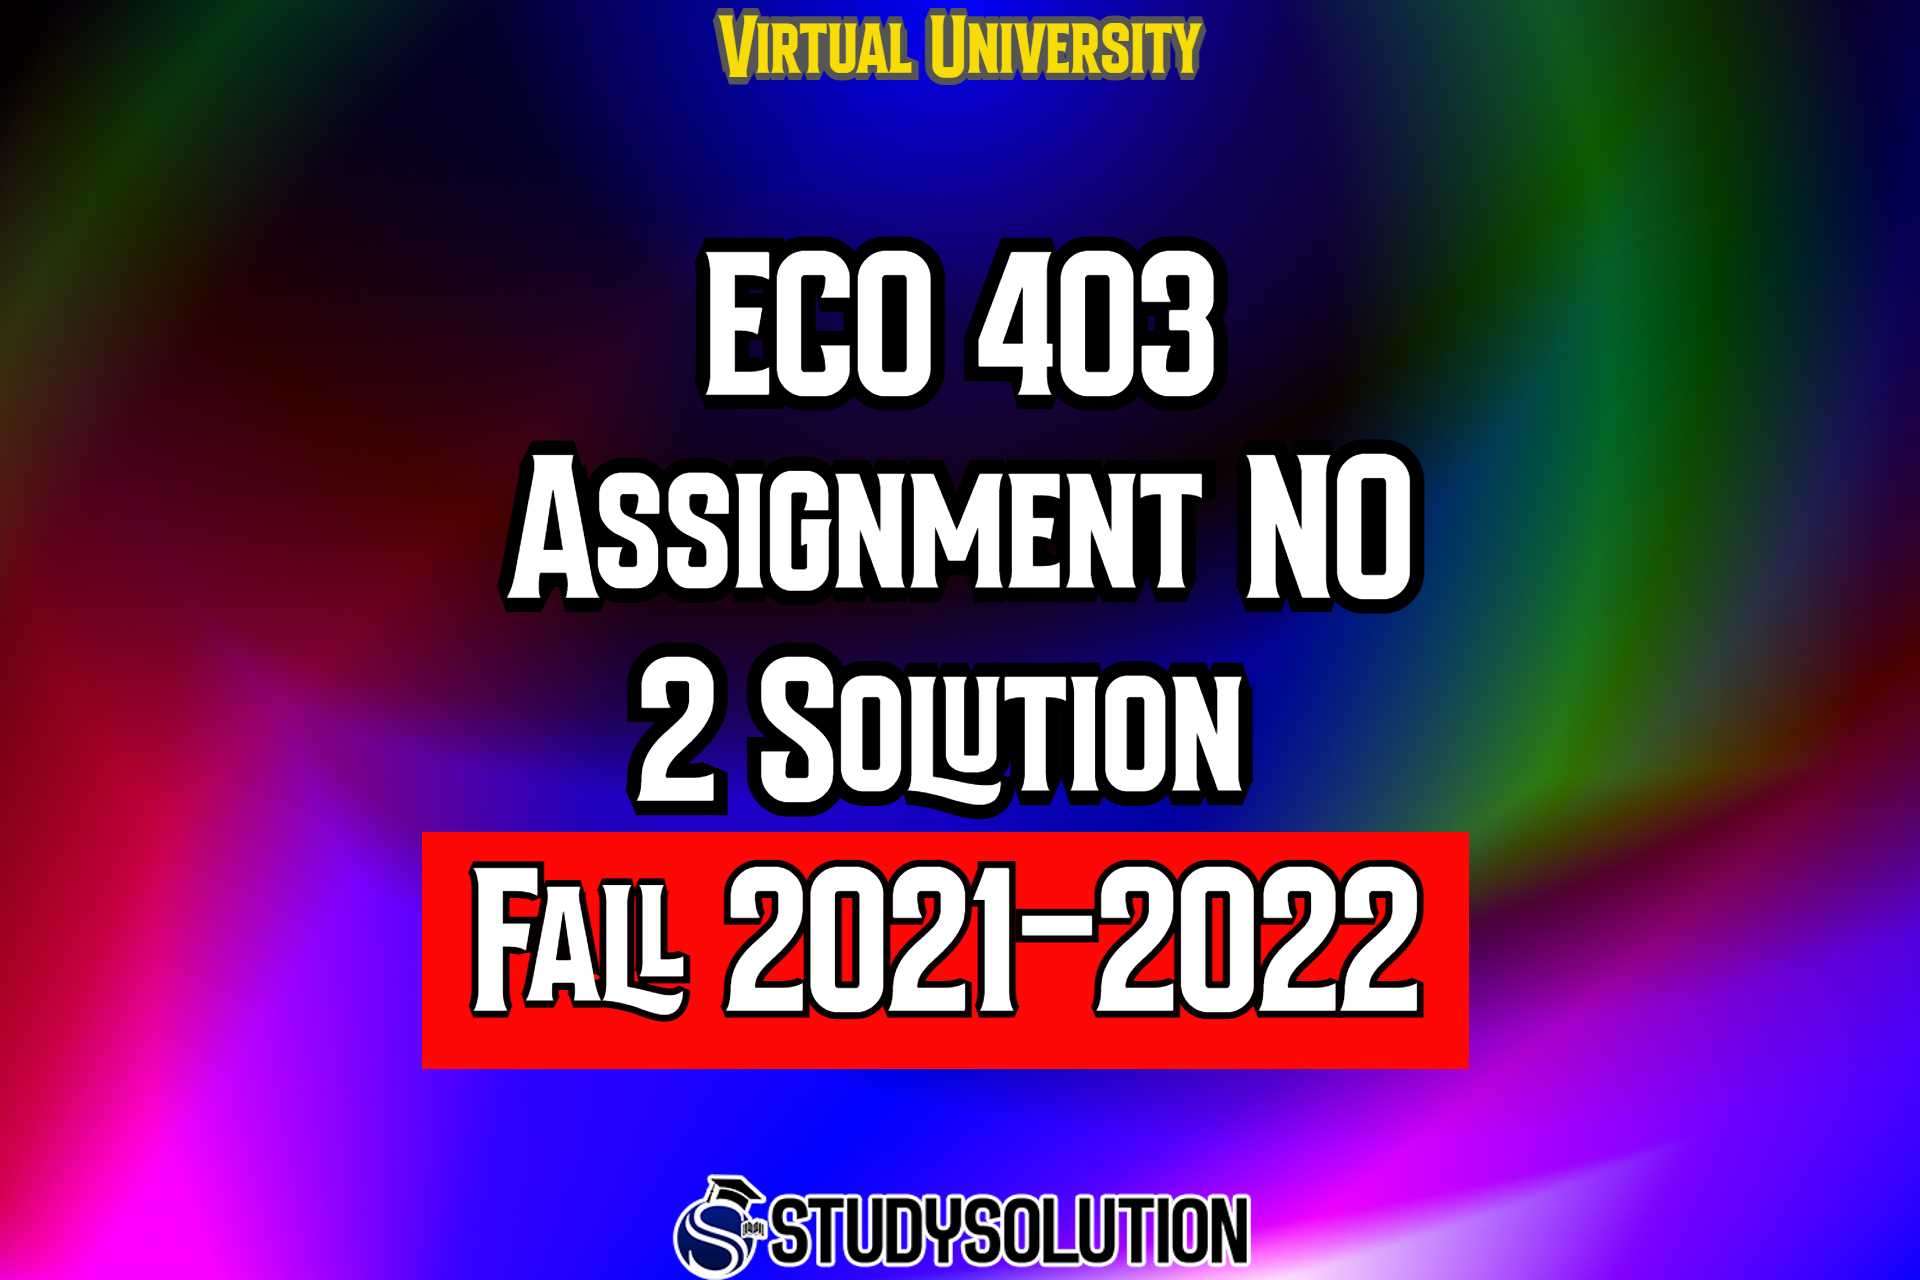 ECO403 Assignment No 2 Solution Fall 2022